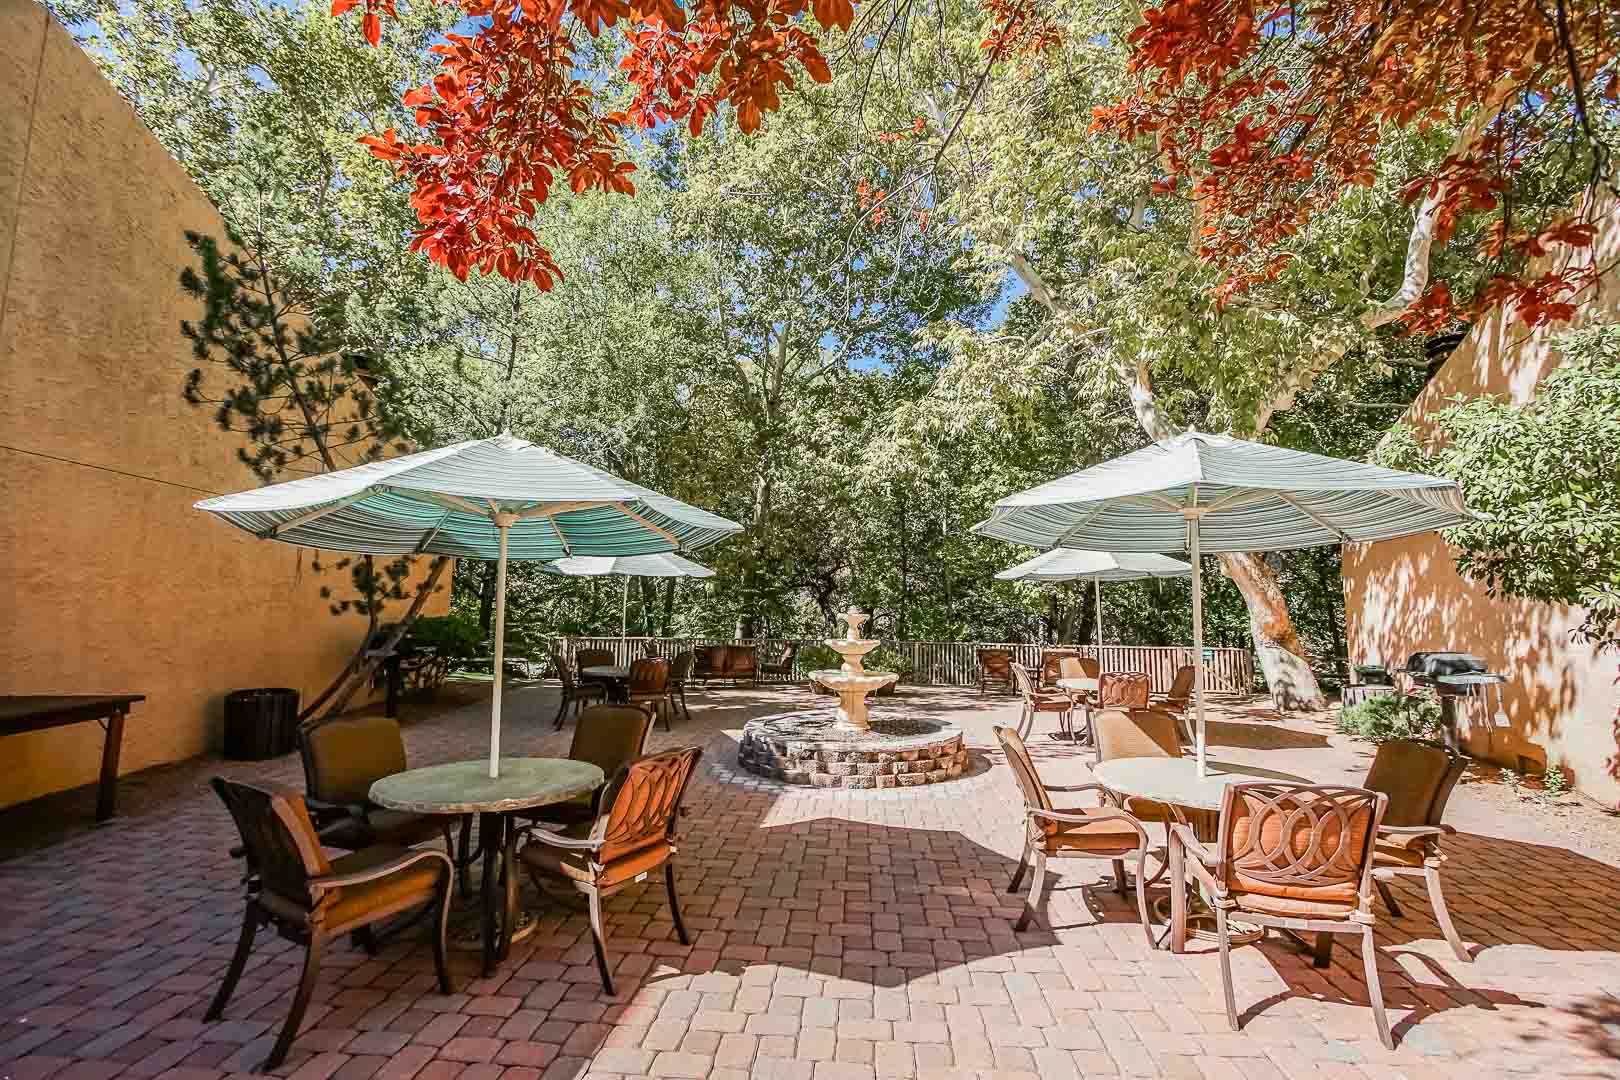 A peaceful outdoor seating at VRI's Villas at Poco Diablo in Sedona, Arizona.